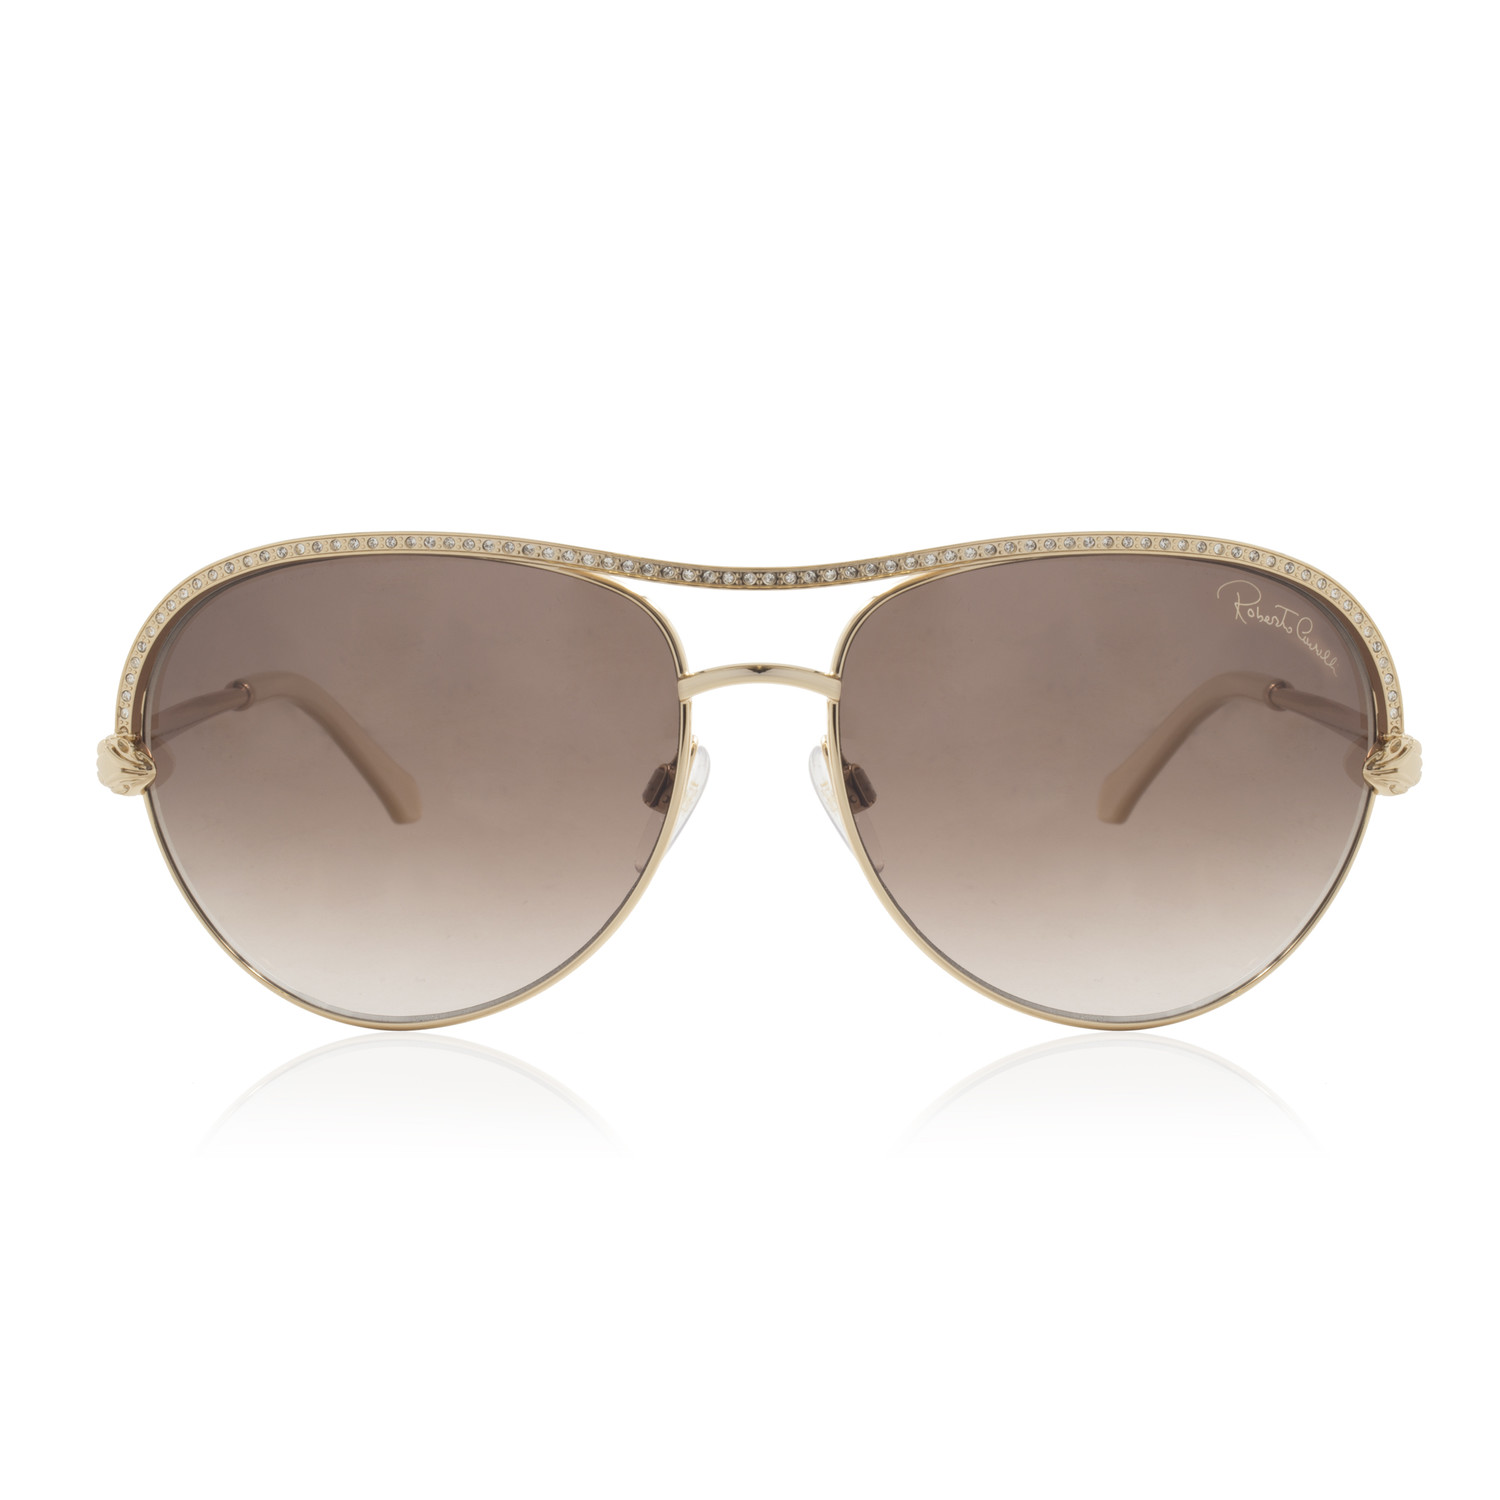 Roberto Cavalli // Women's Aviator Sunglasses // Shiny Rose Gold ...